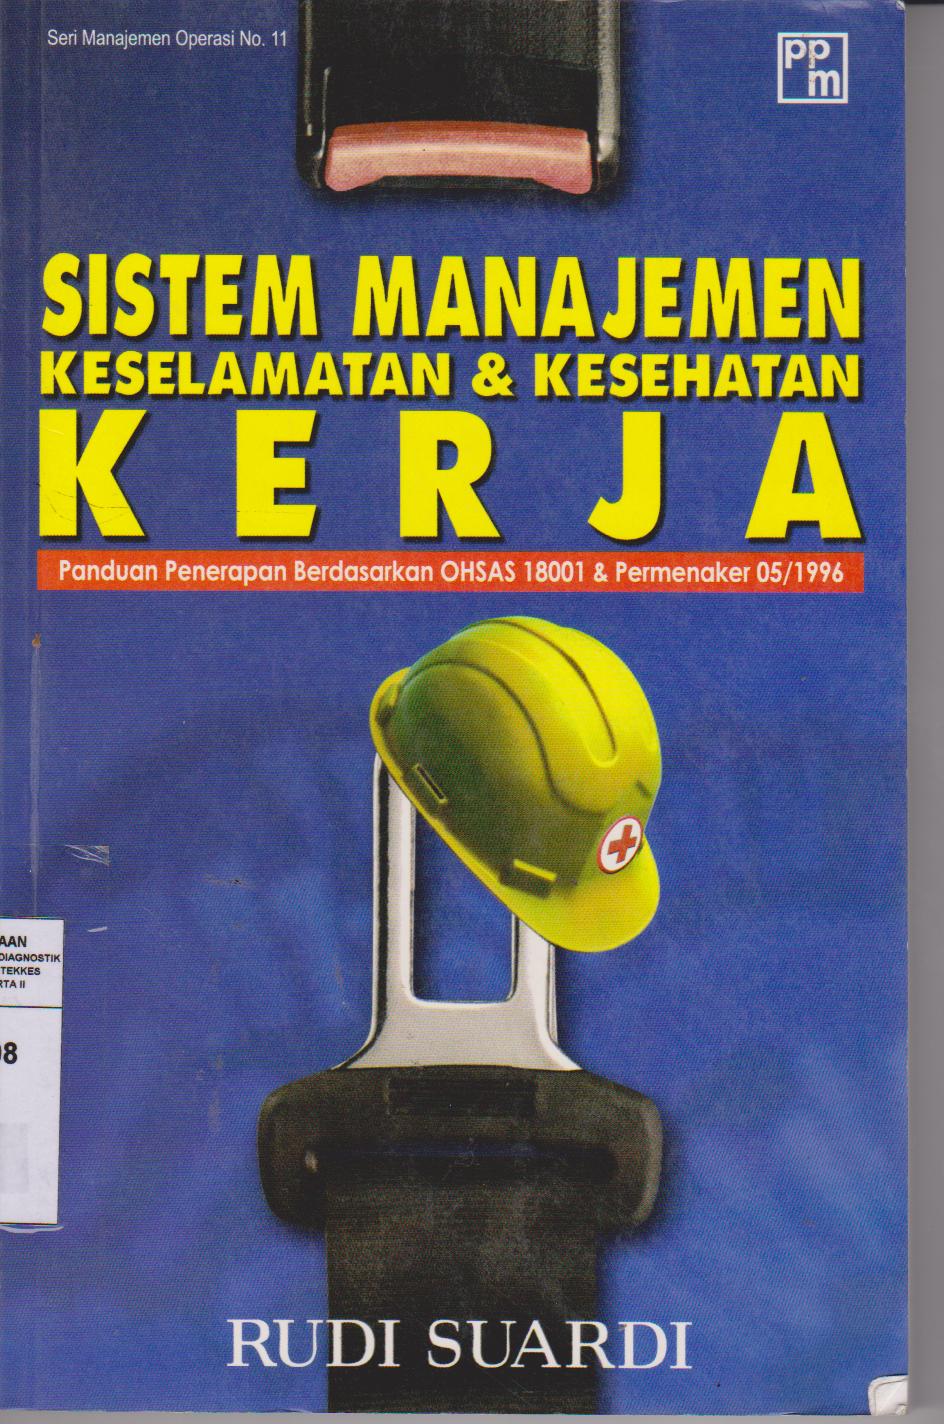 Sistem Manajemen Keselamatan & Kesehatan Kerja : Panduan penerapan berdasarkan OHSAS 18001 & Permenkes 05/1996